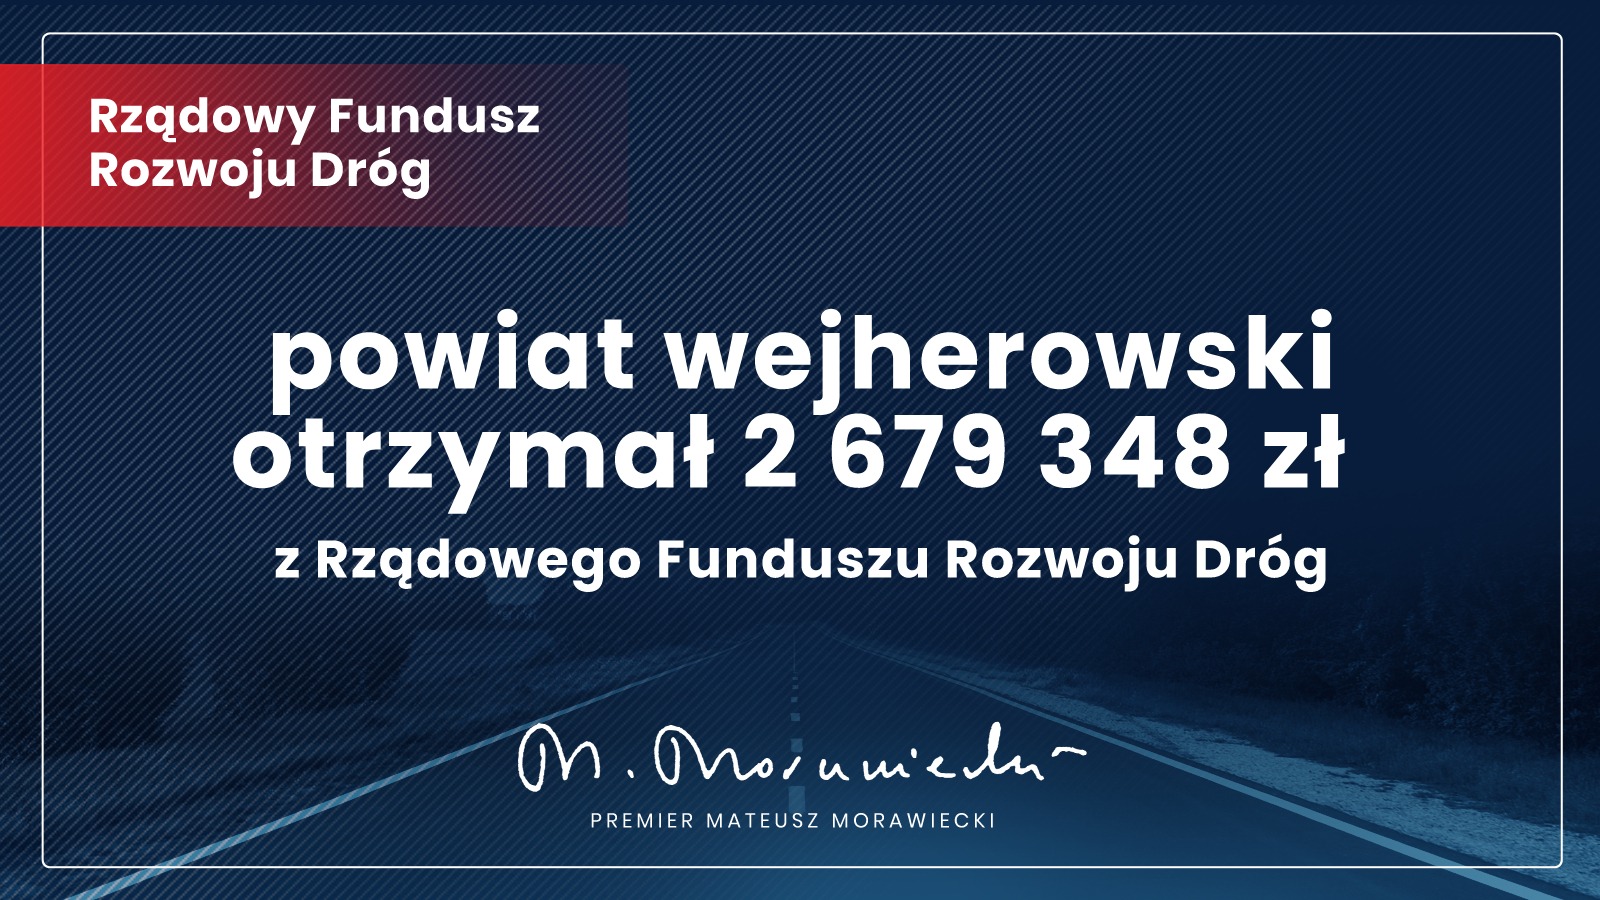 Ponad 3 mln zł dla regionu wejherowskiego na modernizację dróg z Rządowego Funduszu Rozwoju Dróg!